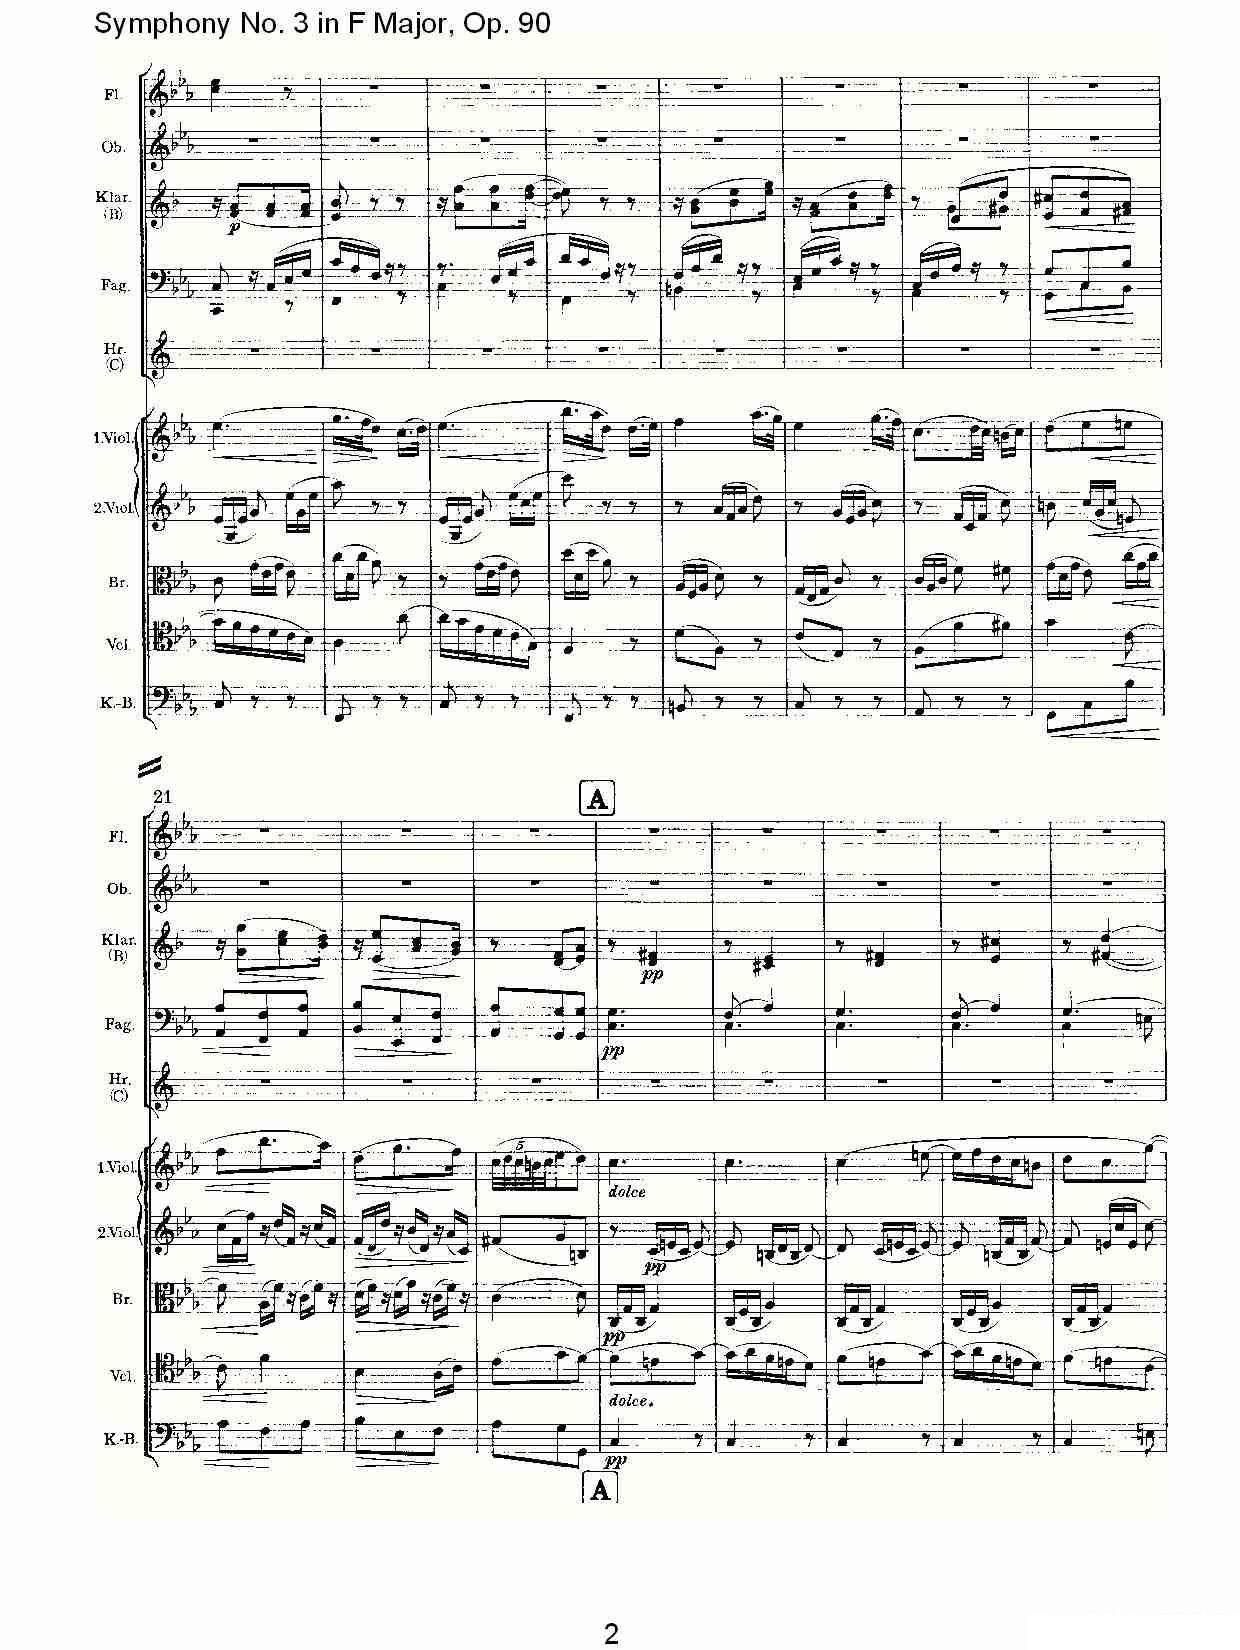 曲谱约翰内斯·勃拉姆斯《F大调第三交响曲, Op.90第三乐章》（第2页）